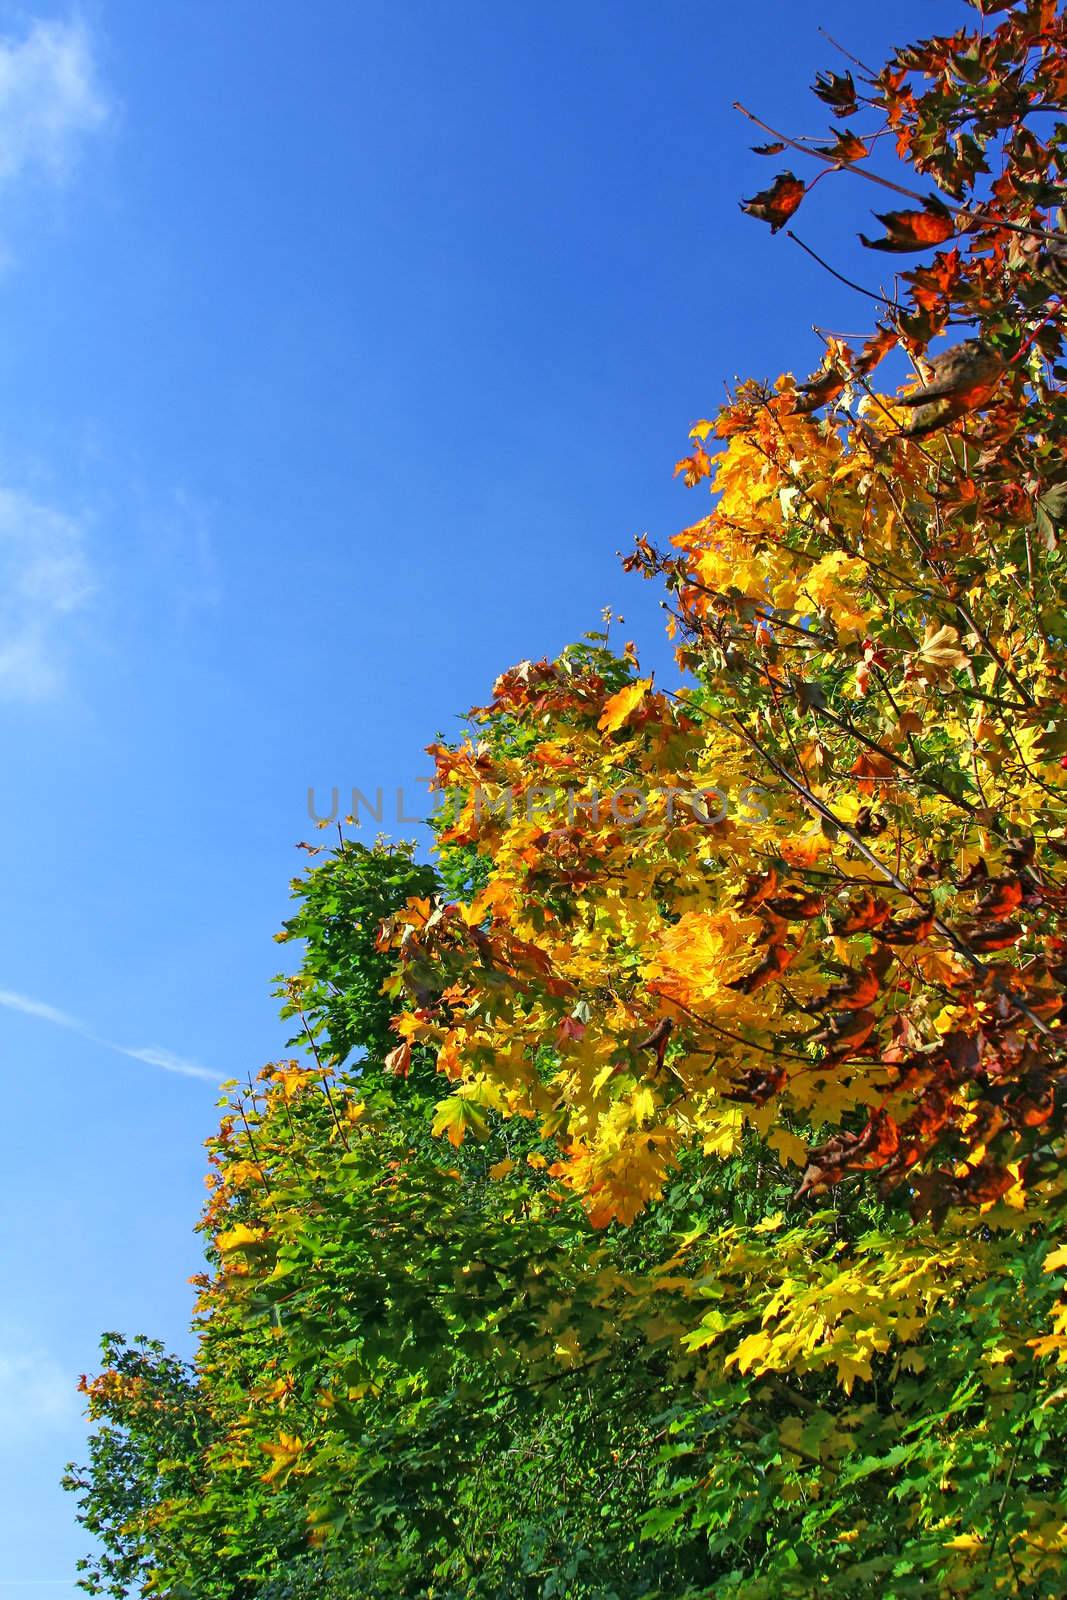 Autumn park - Brilliance Autumn Tree